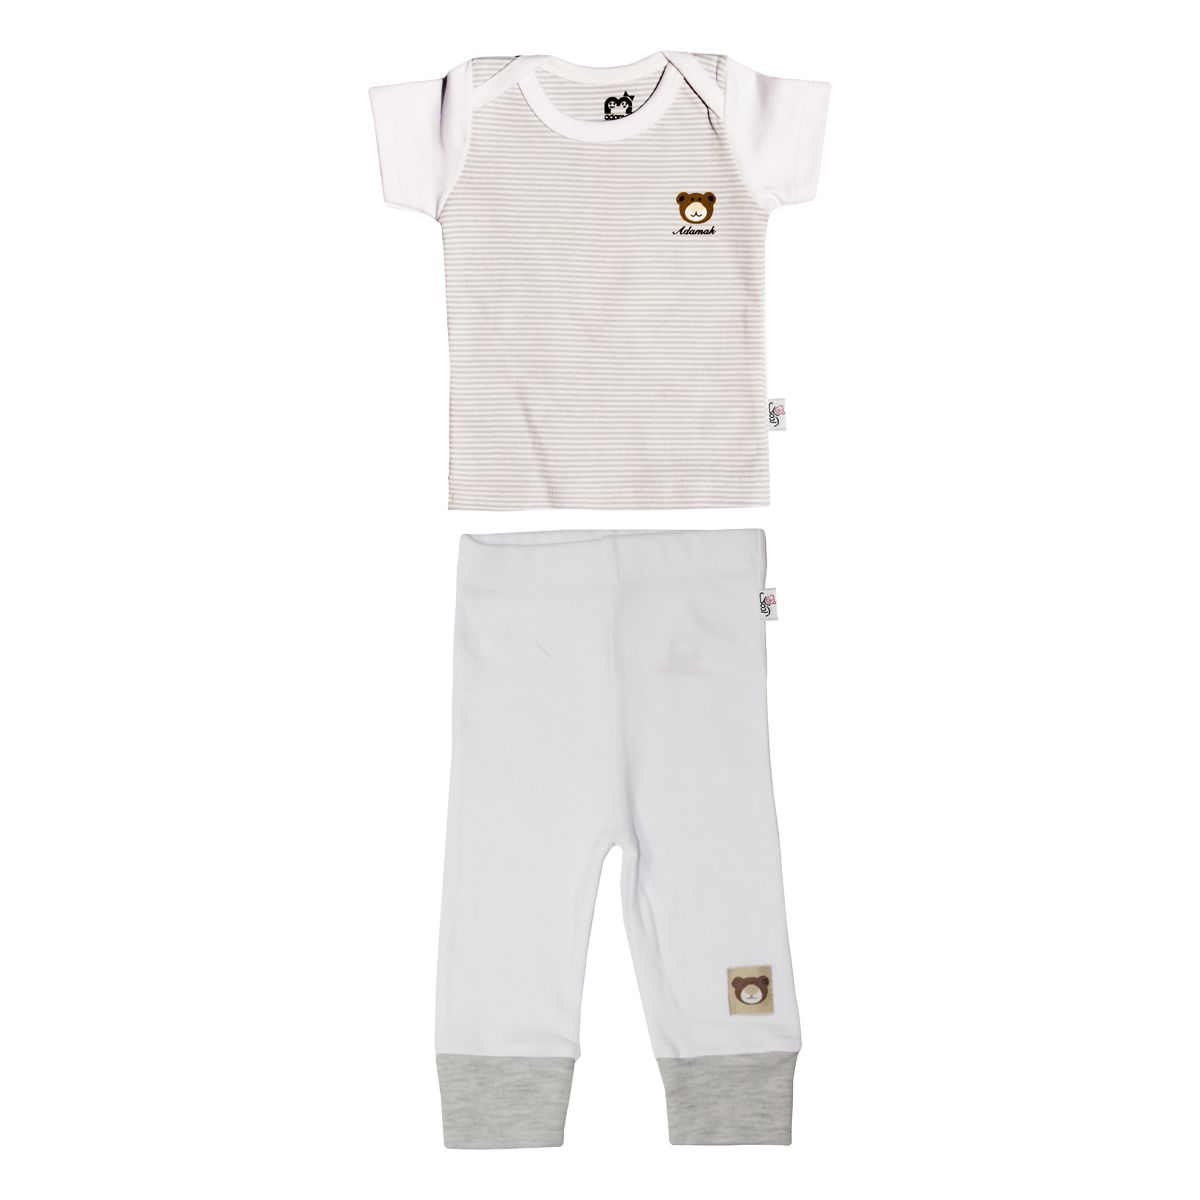 ست تی شرت و شلوار نوزادی آدمک طرح راه راه کد 2-152088 رنگ طوسی -  - 1